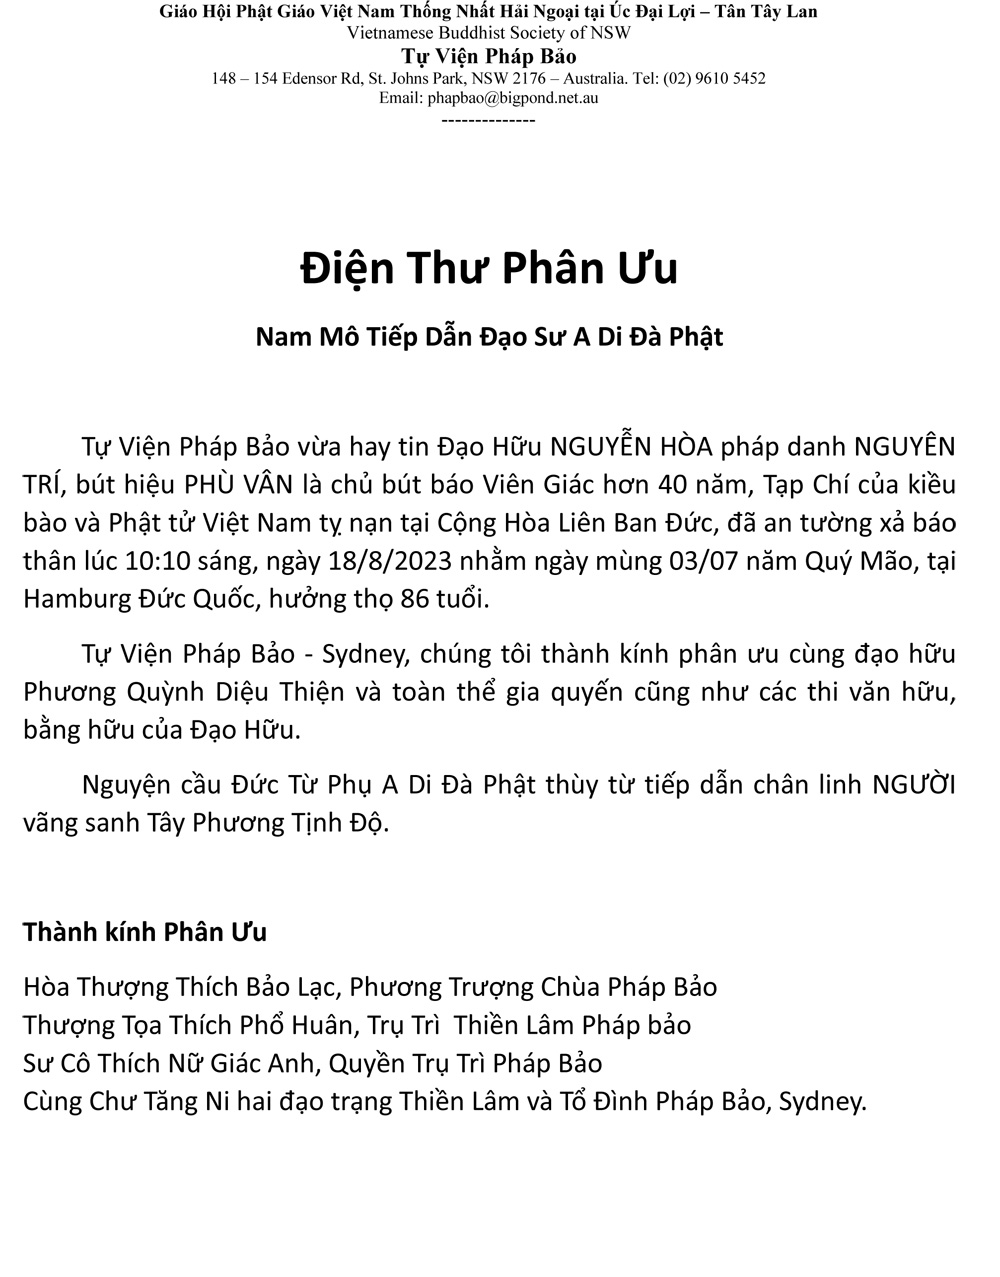 Phan uu-chua phap bao